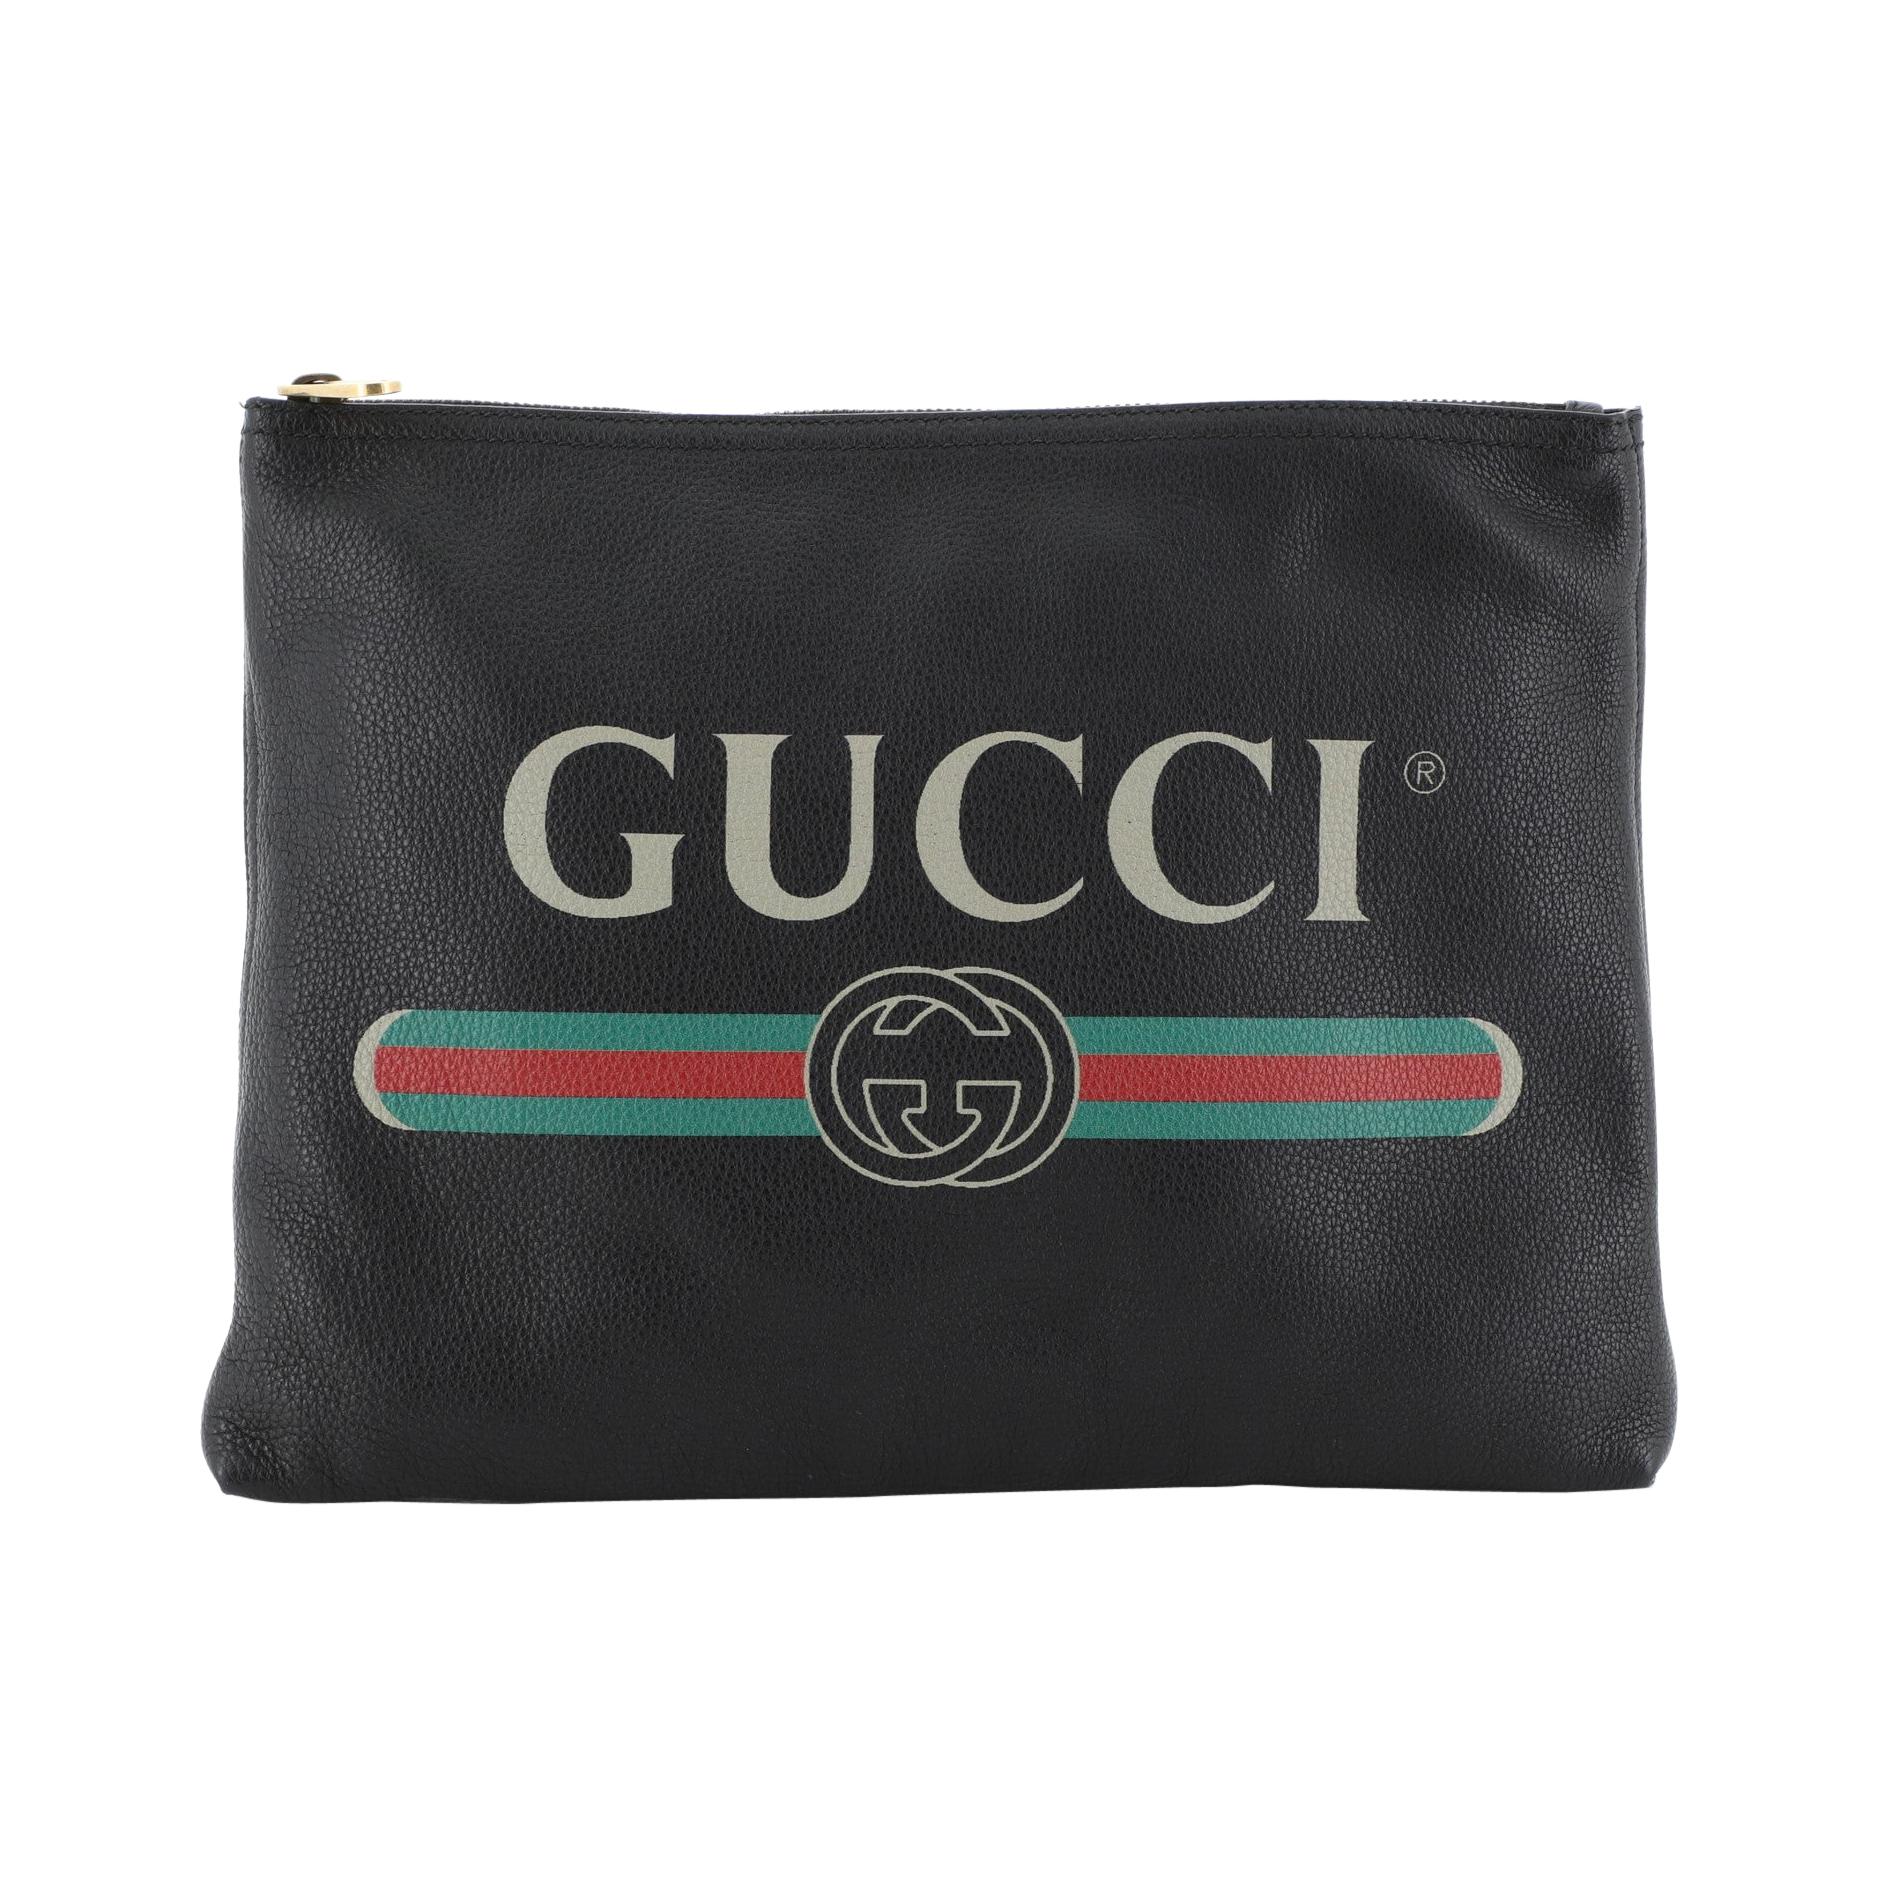 Gucci Logo Portfolio Clutch Printed Leather Medium